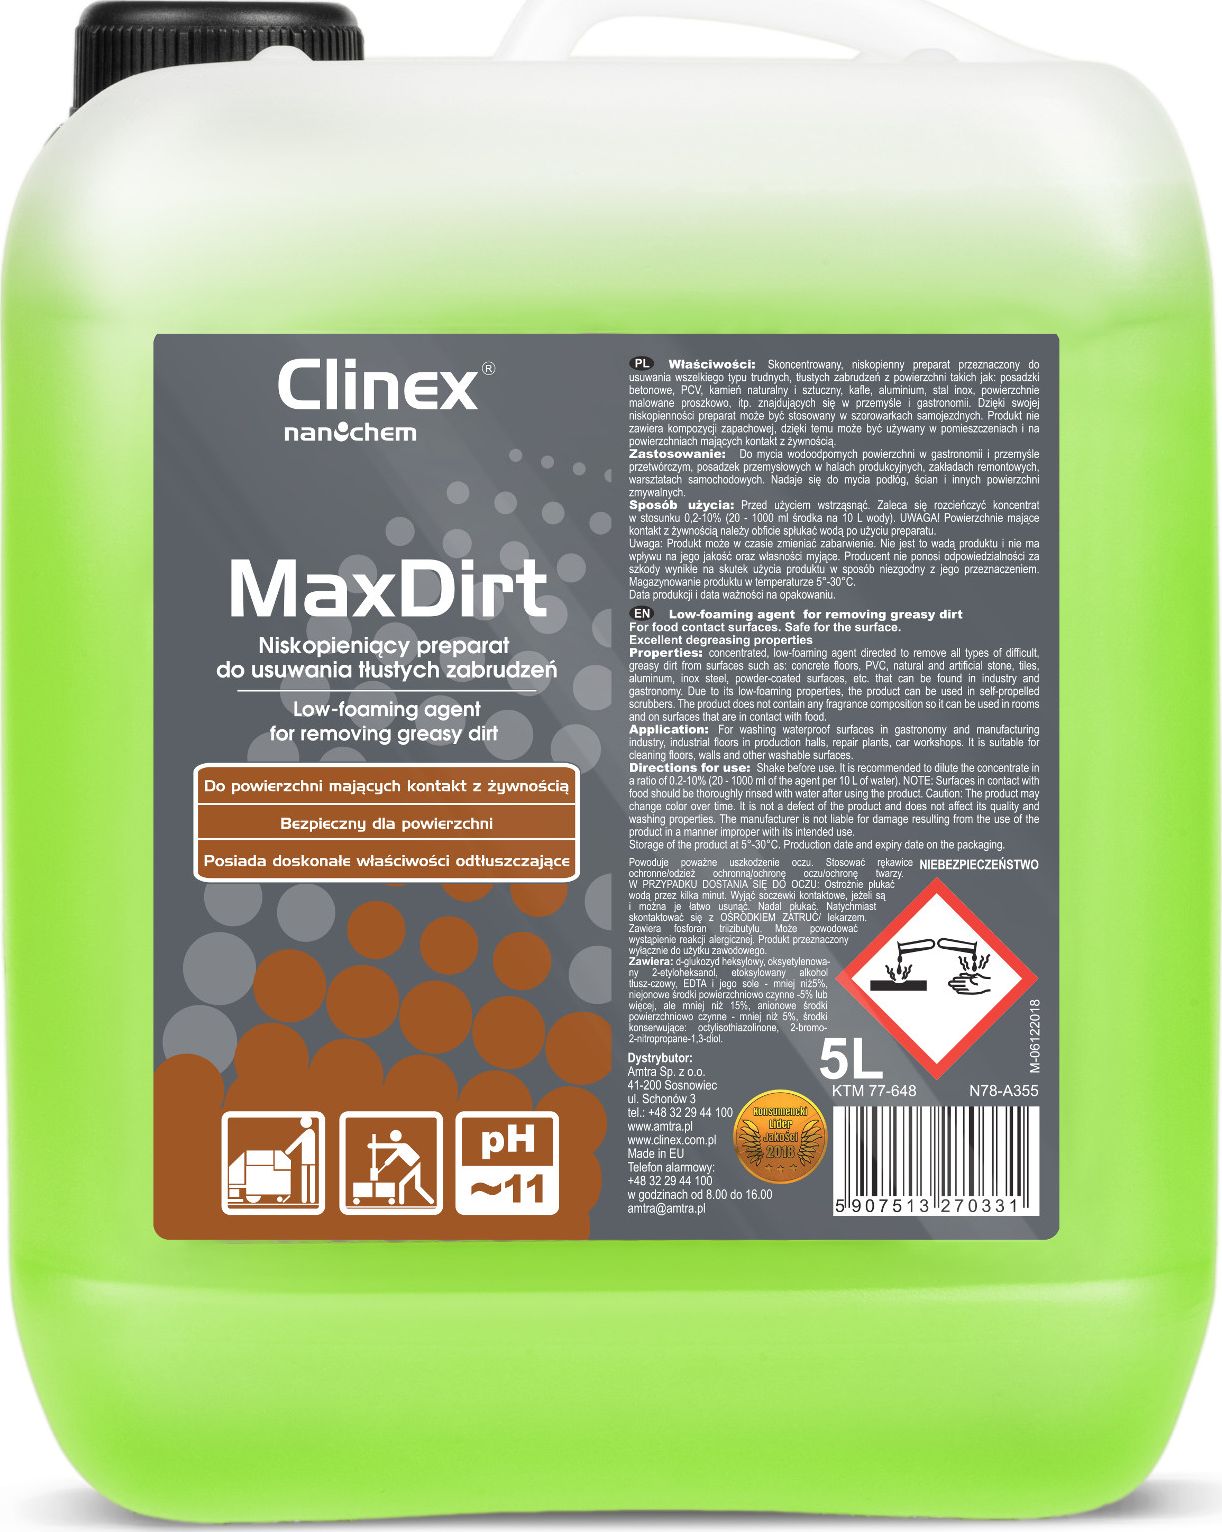 Clinex Koncentrat preparat do usuwania tlustych zabrudzen CLINEX 4Dirt 5L Koncentrat preparat do usuwania tlustych zabrudzen CLINEX 4Dirt 5L Sadzīves ķīmija